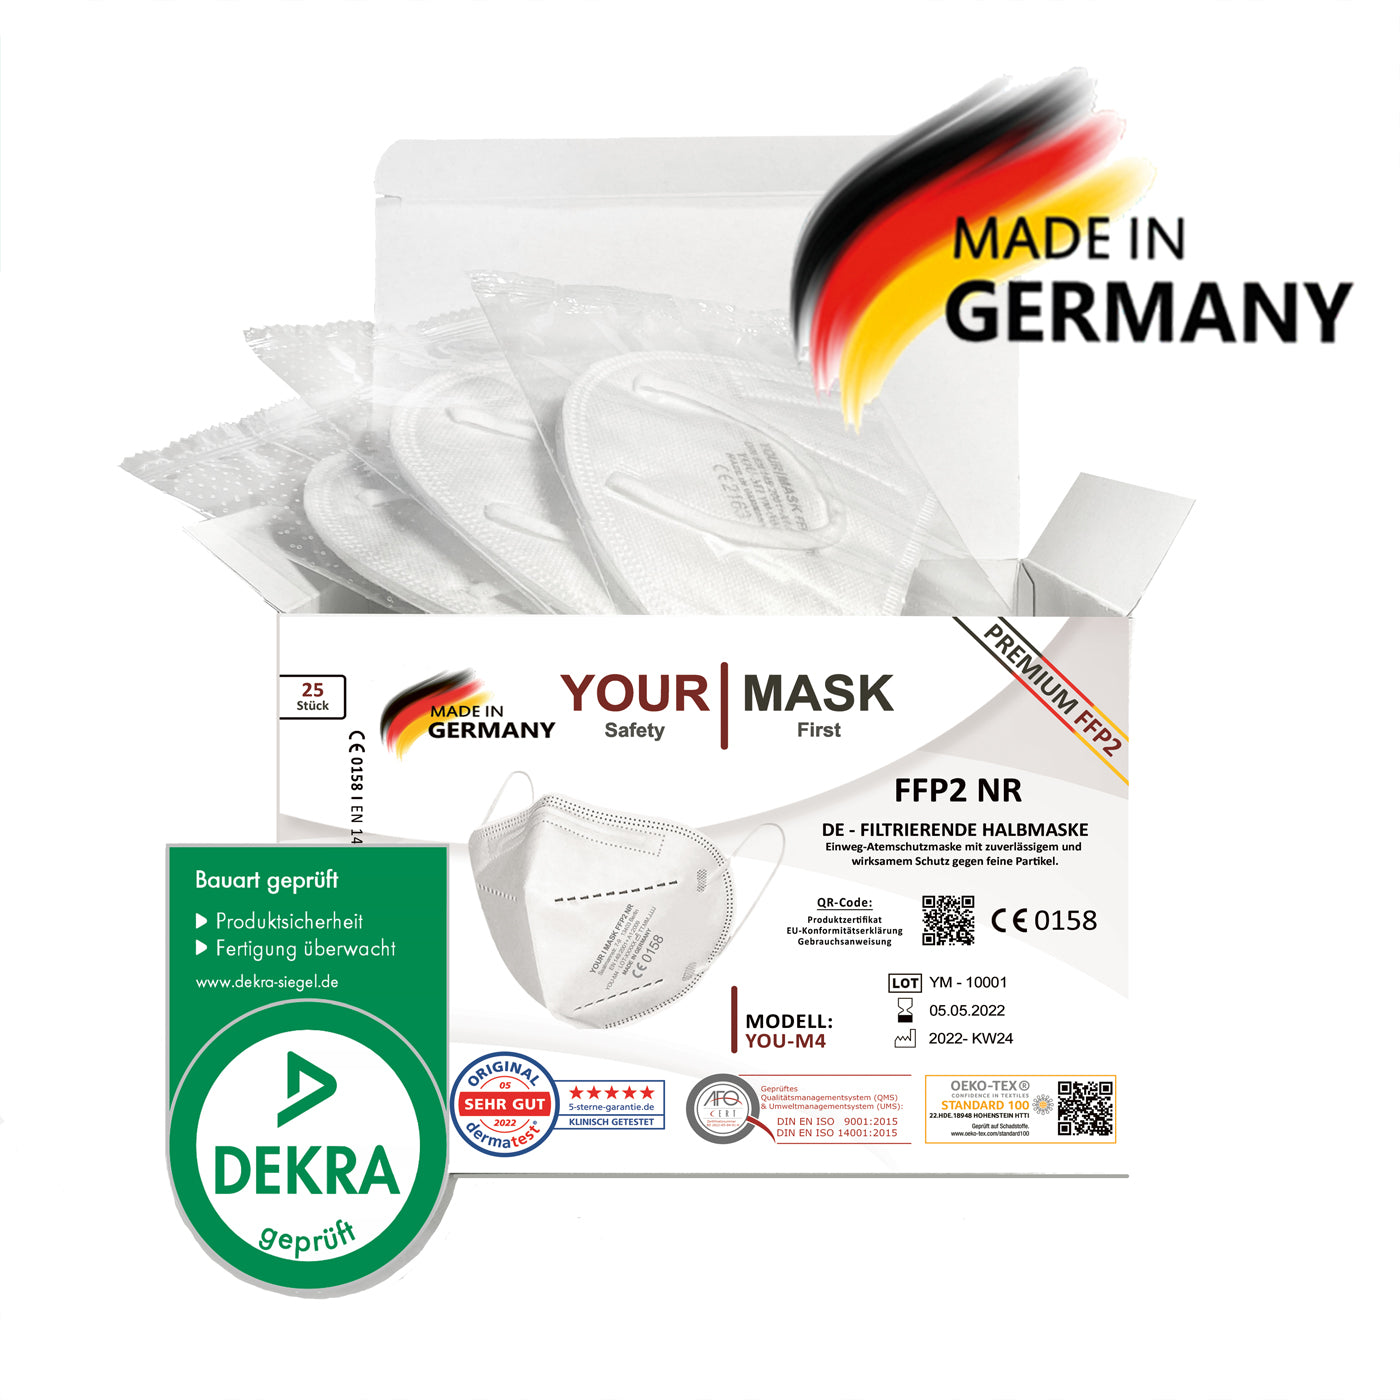 PREMIUM FFP2-Maske YOU-M4 kaufen (Karton 675 Stück) ab 0,30 € netto / Stück